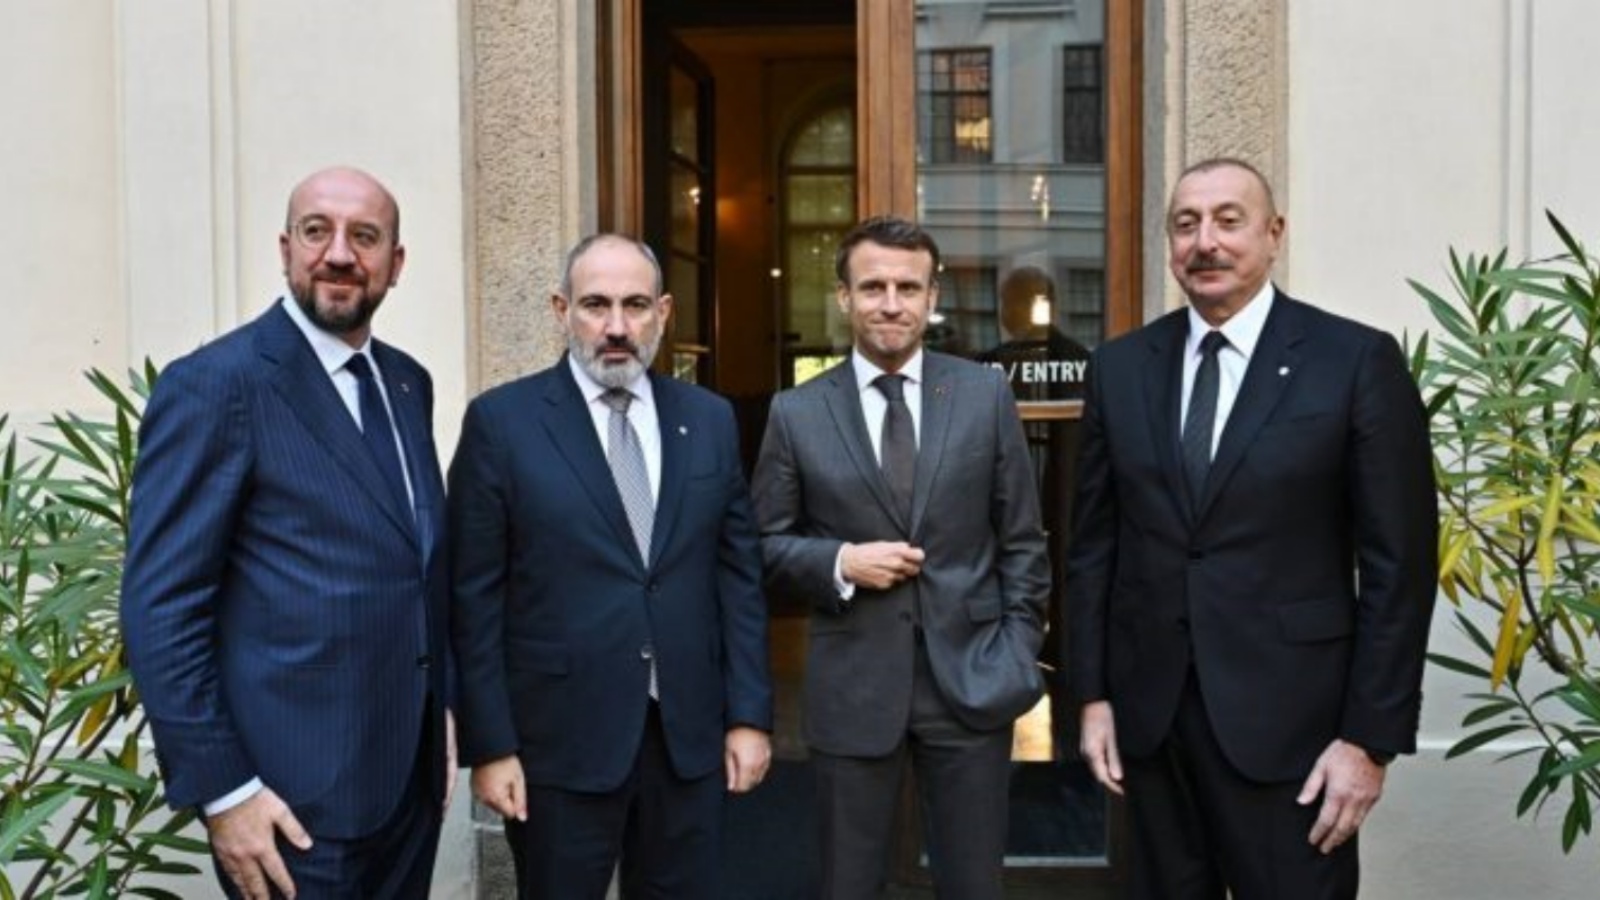 الرئيس الأذربيجاني إلهام علييف (إلى اليمين) والرئيس الفرنسي إيمانويل ماكرون (من اليمين إلى اليمين) ورئيس الوزراء الأرميني نيكول باشينيان (من اليسار إلى اليمين) ورئيس المجلس الأوروبي تشارلز ميشيل (إلى اليسار) يلتقون في قلعة براغ حيث ستُعقد القمة الأوروبية في براغ، جمهورية التشيك، 6 أكتوبر 2022